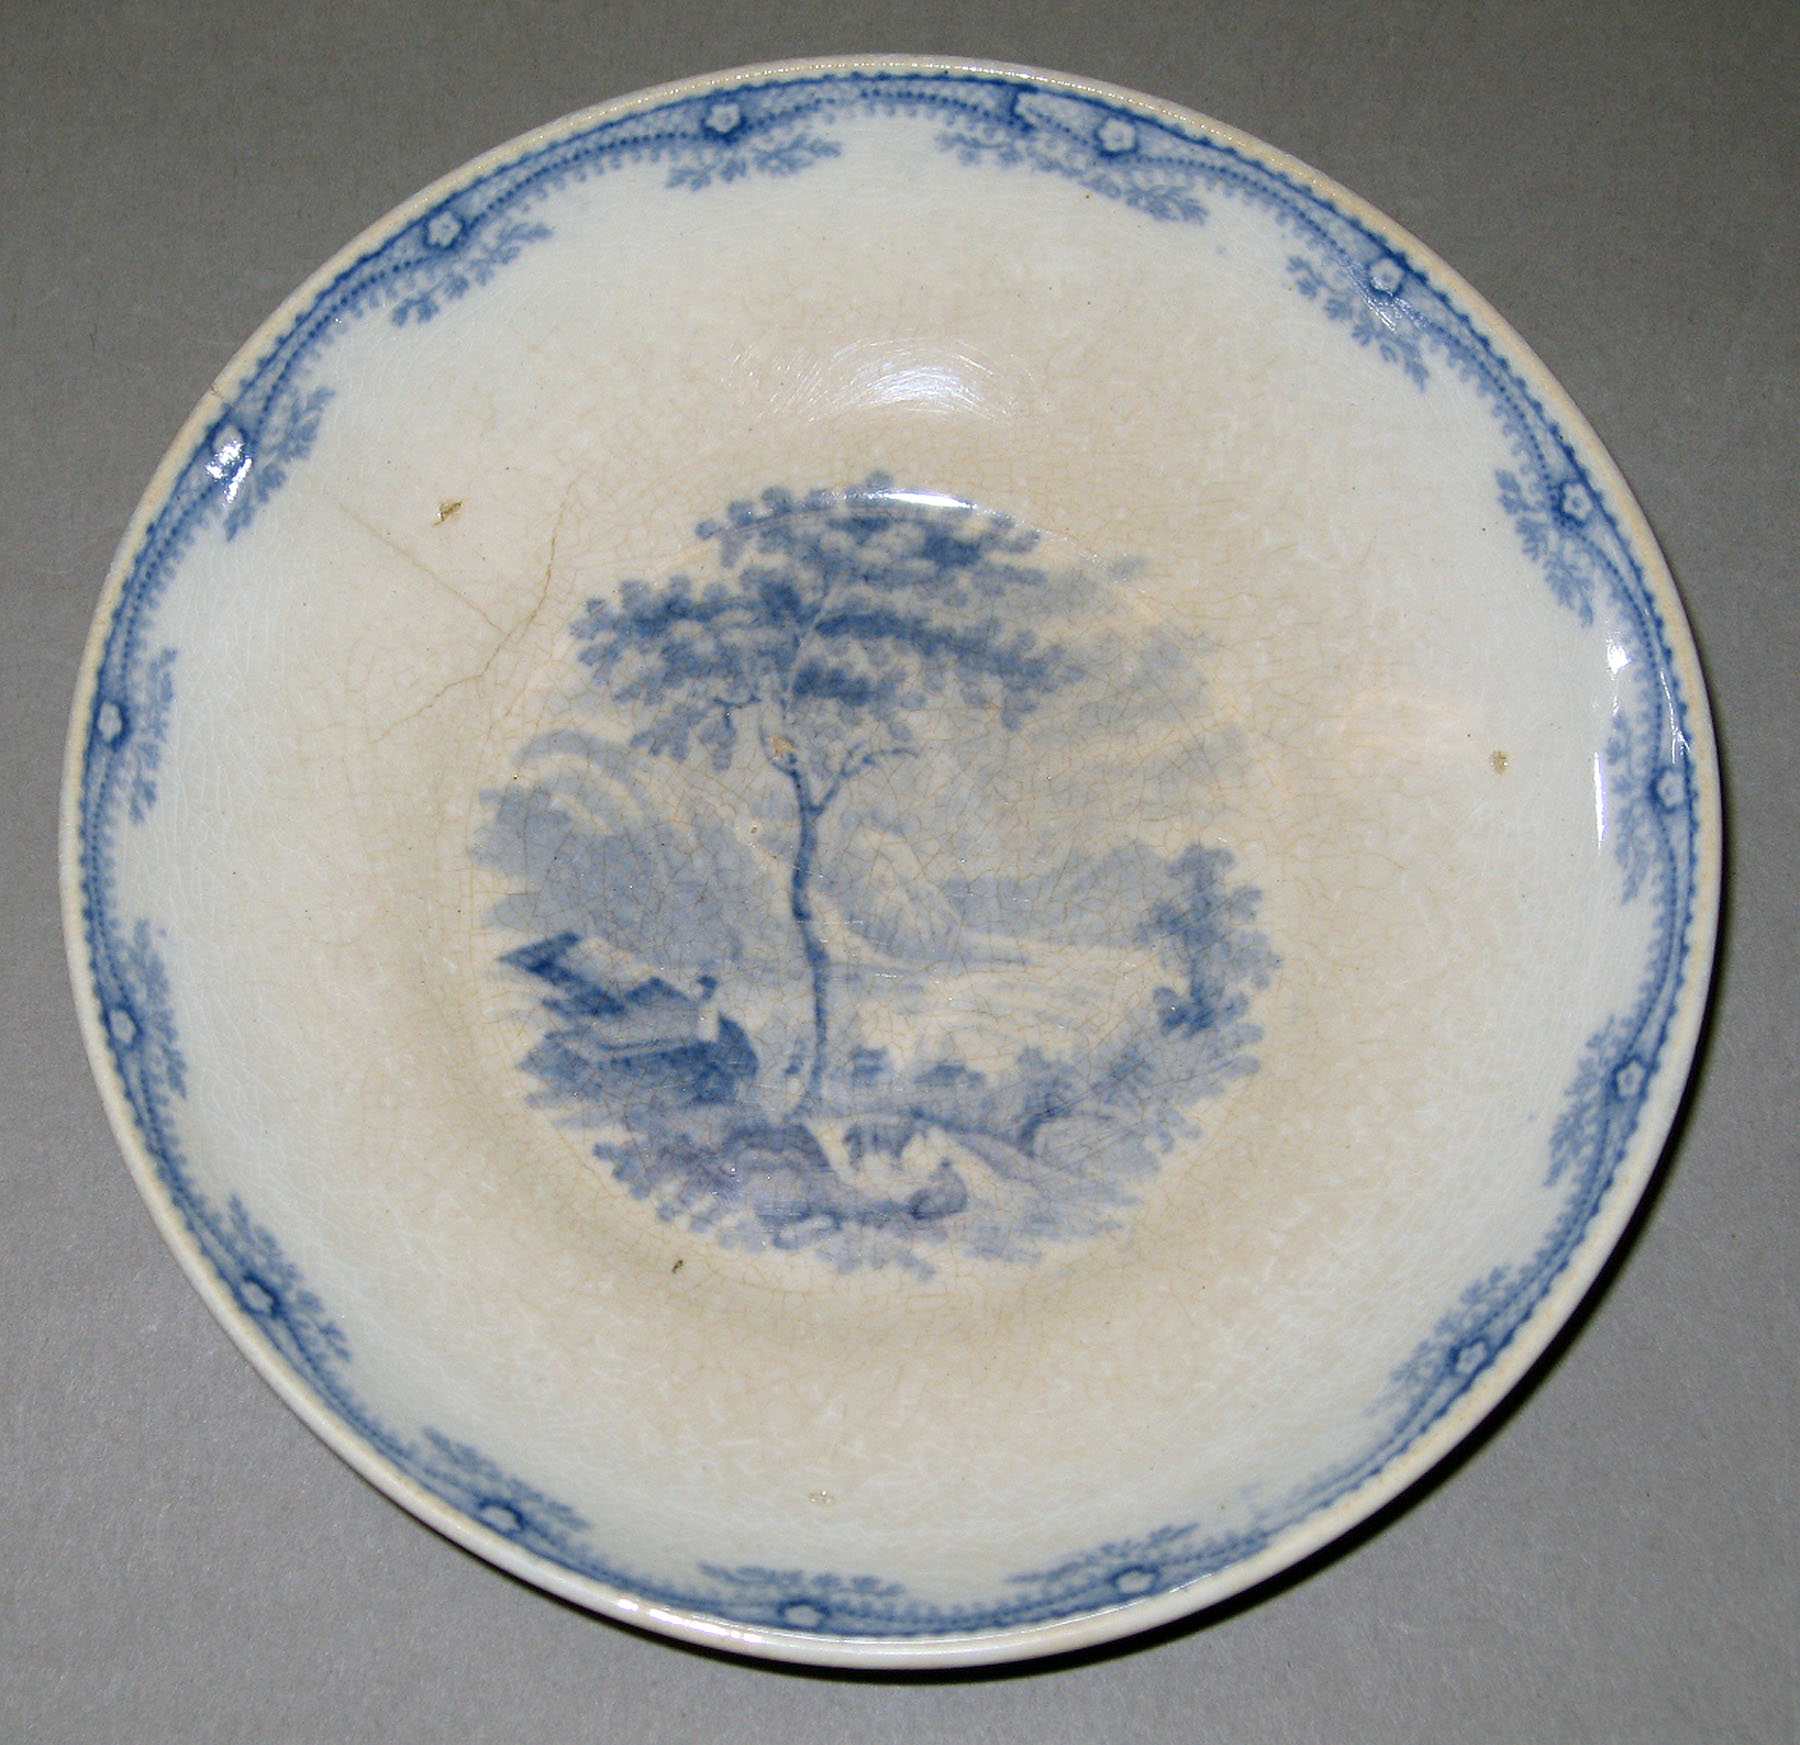 1965.2915.014 Ridgway earthenware plate